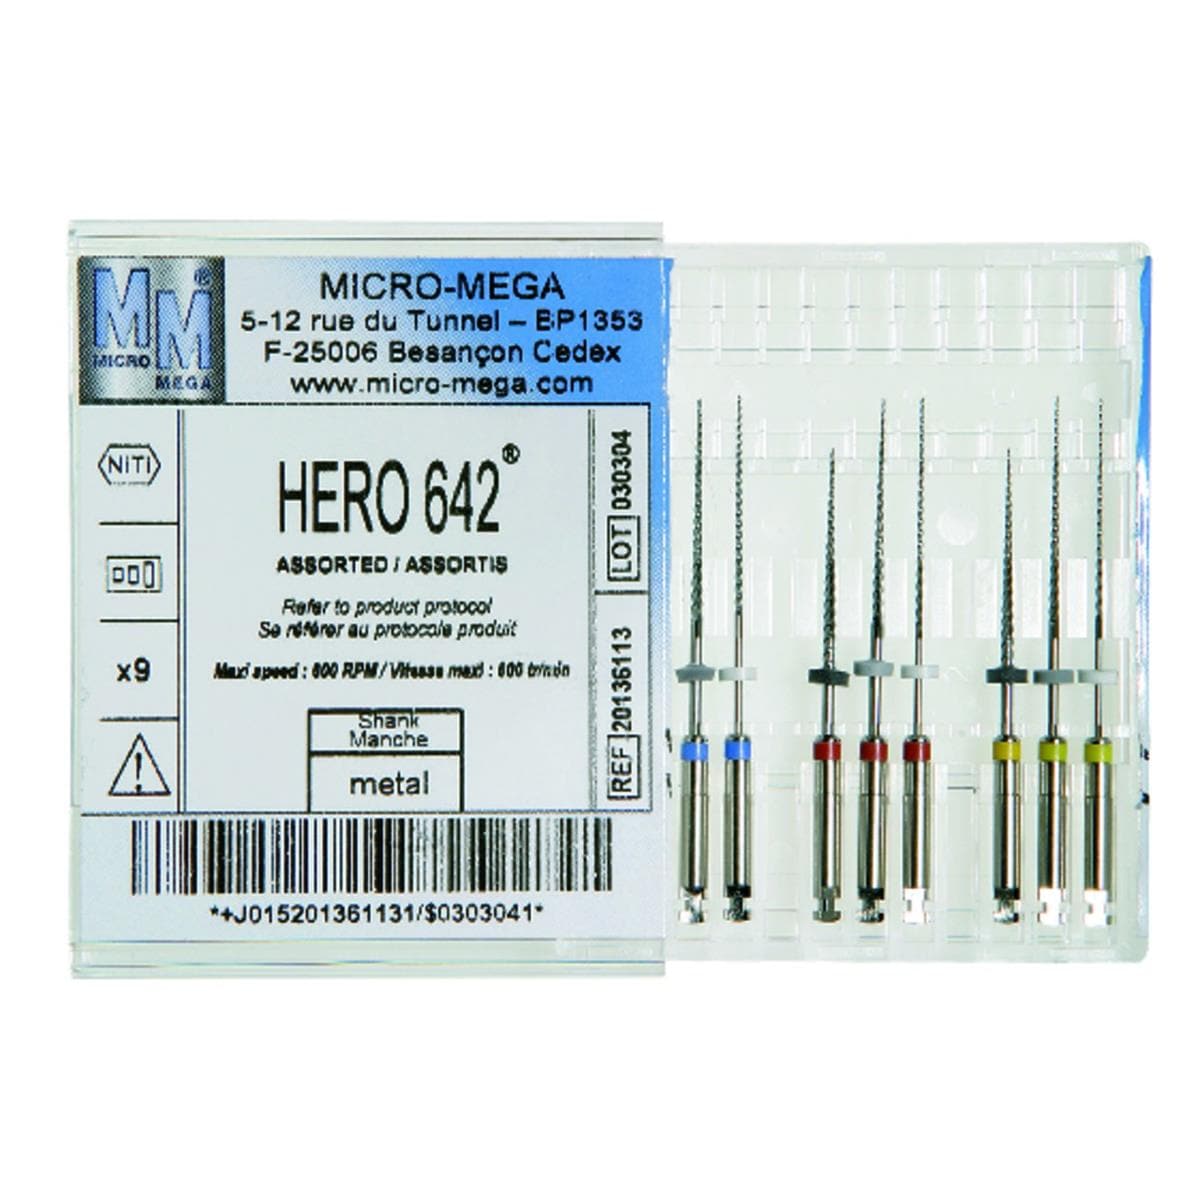 Hero 642 MICRO-MEGA - 4% - 21mm - n 30 - Bote de 6